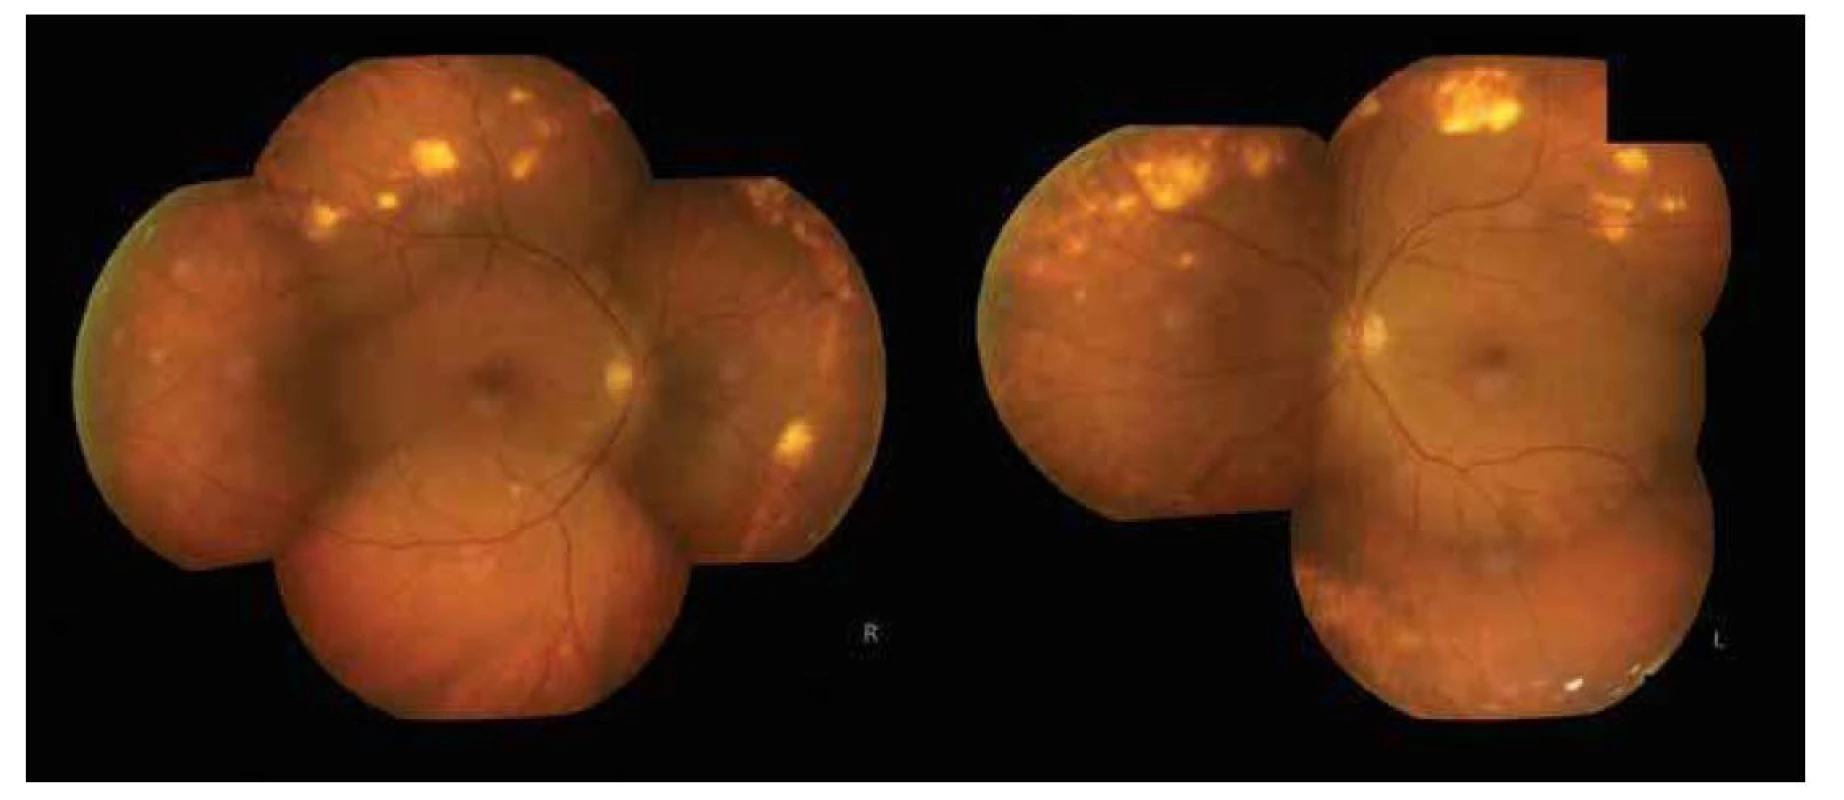 Fotografia očného pozadia (pravé oko po antiVEGF liečbe) – v strednej periférii horného temporálneho a nazálneho
kvadrantu vidno početné sklérochoroidálne kalcifikácie